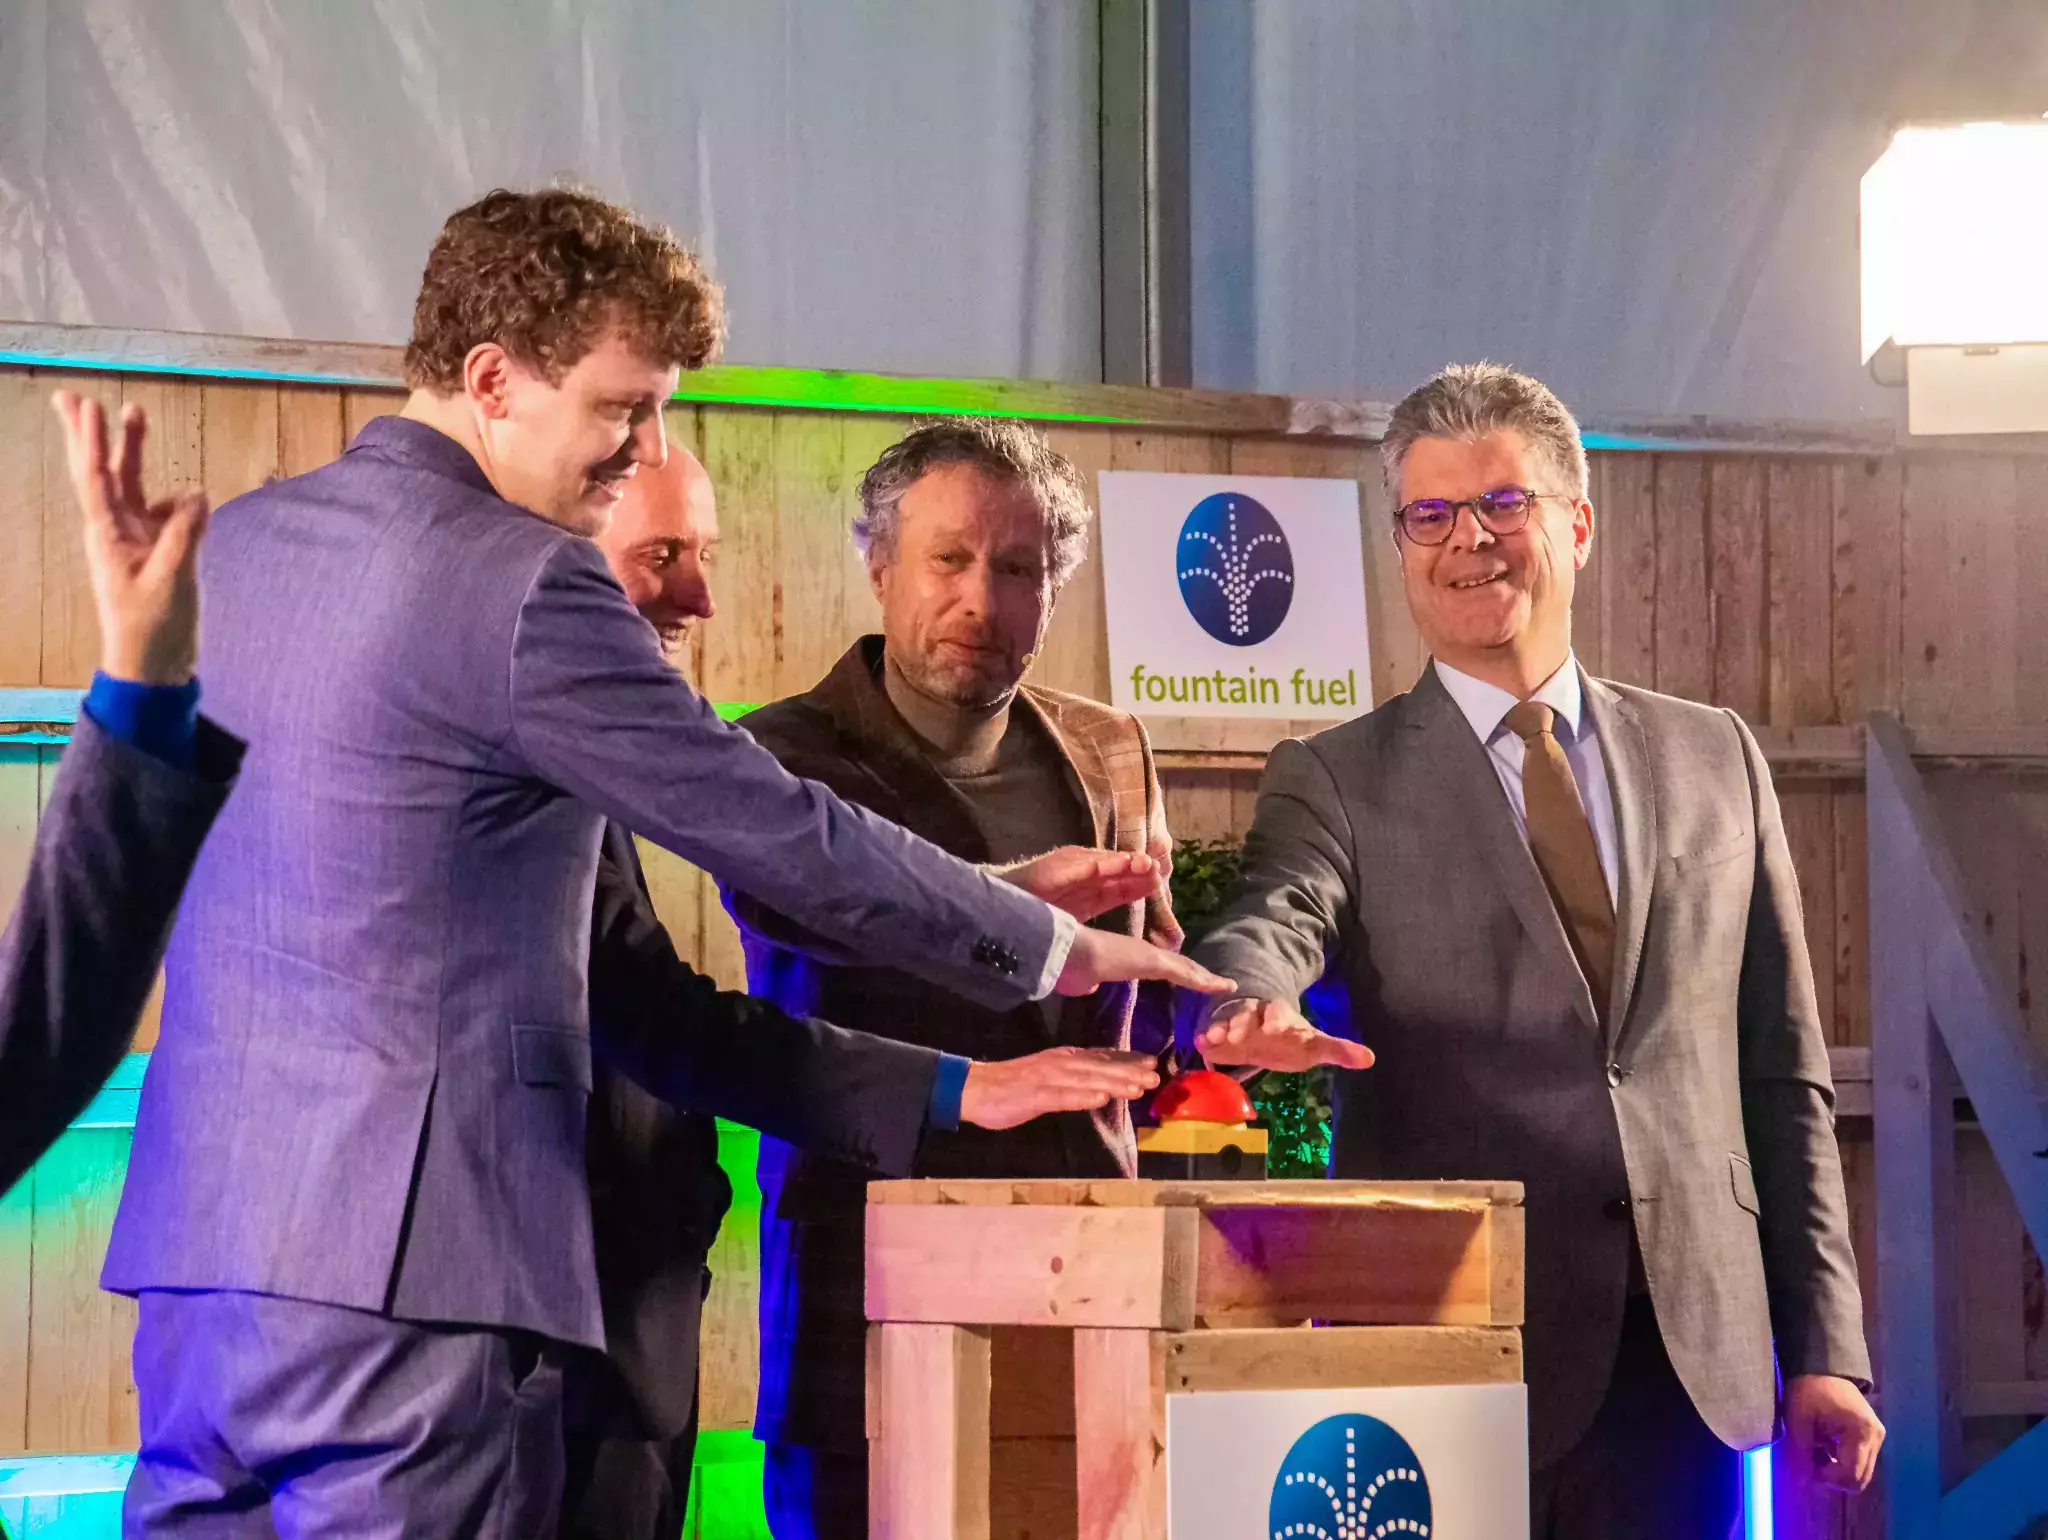 De commissaris en drie andere mensen drukken samen op een grote rode knop bij de start van de bouw van het waterstofstation in Amersfoort op 21 oktober.